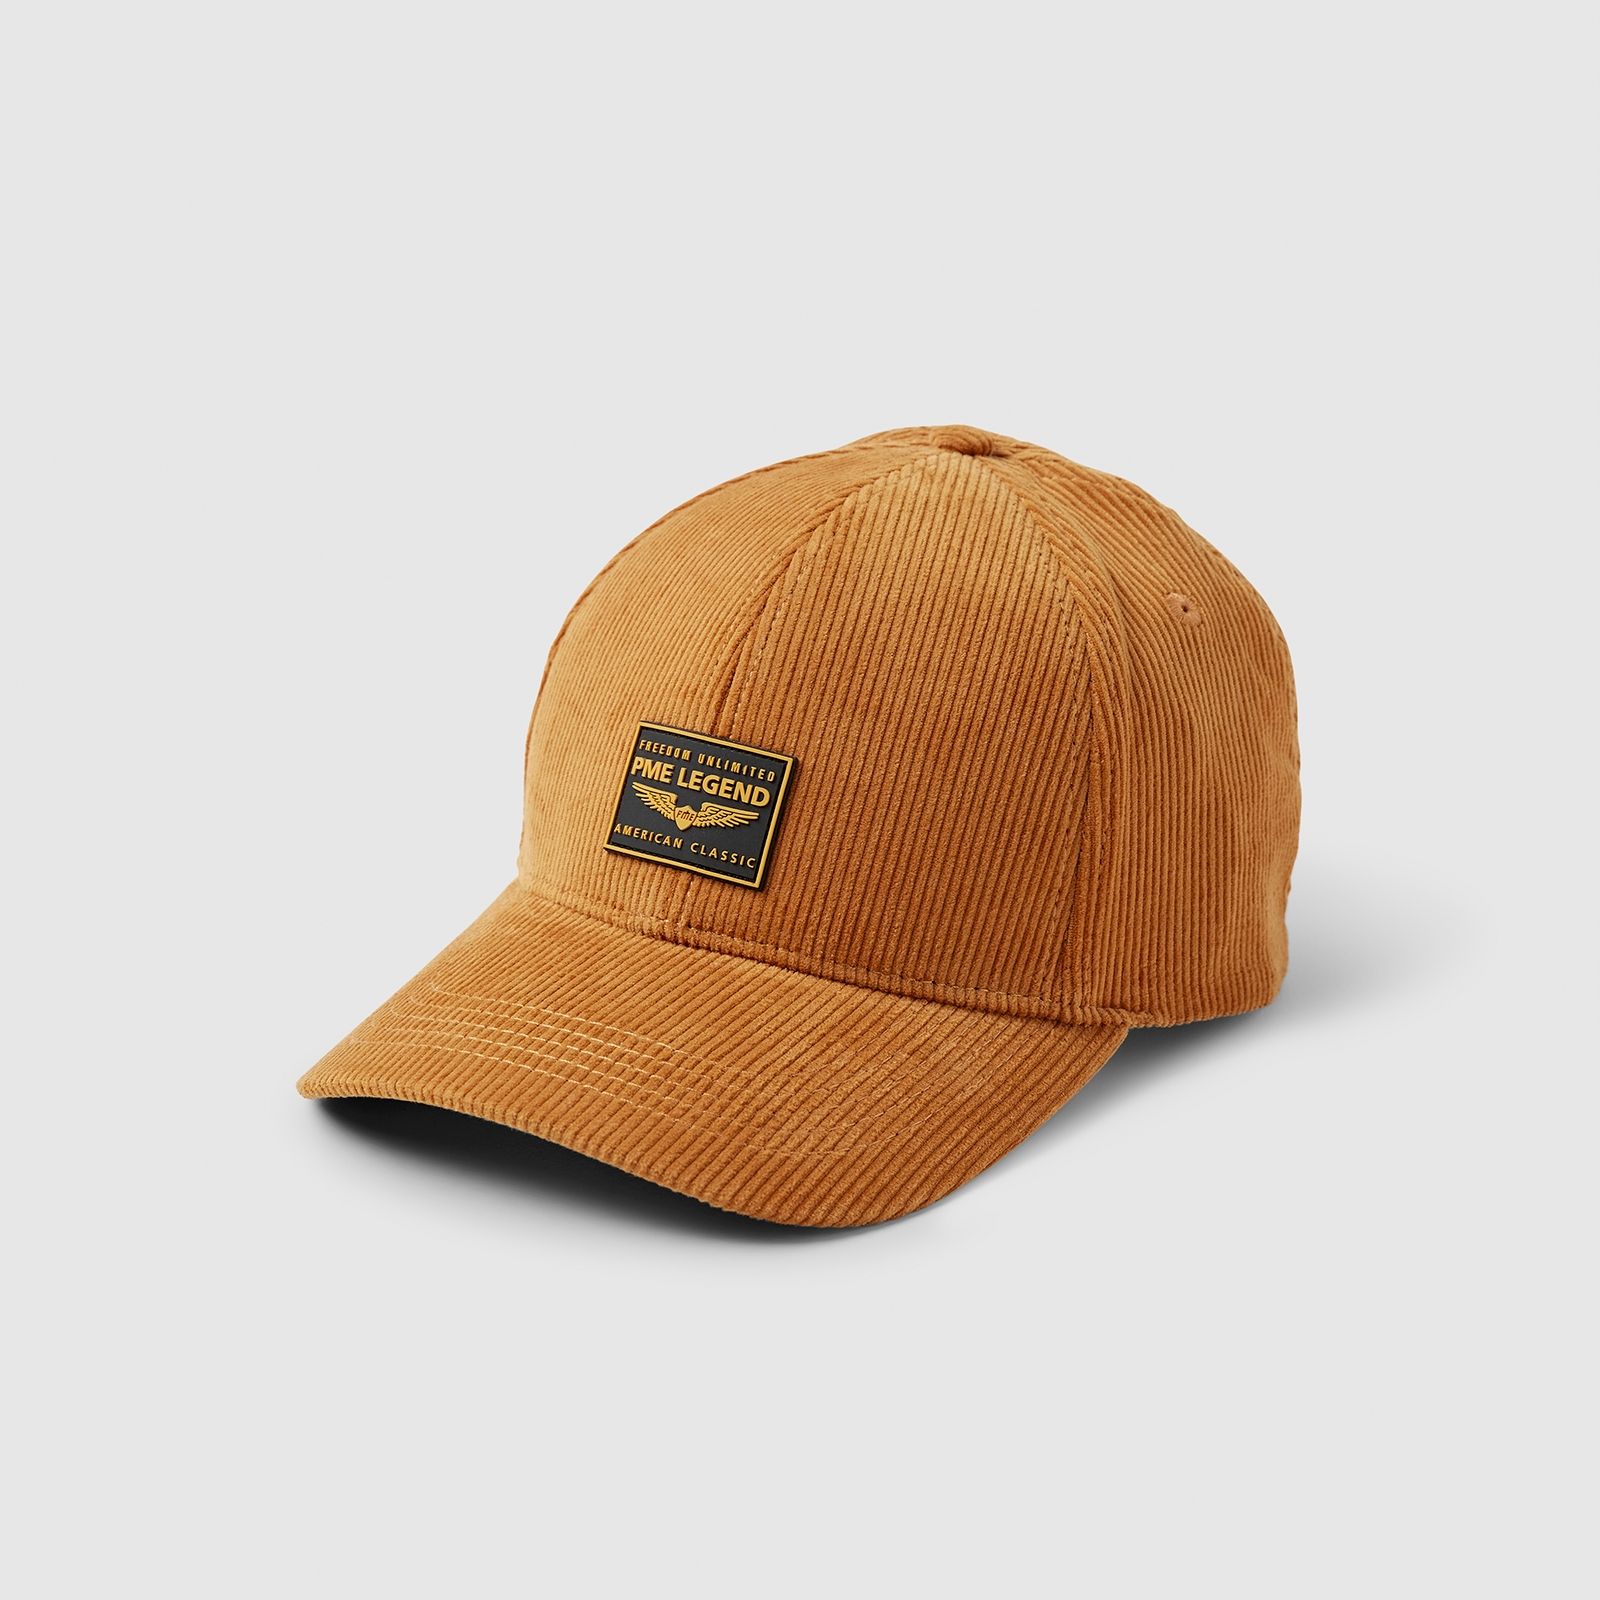 Pme Legend Corduroy cap with rubber badge - Golden Oak Golden Oak 00097551-2005